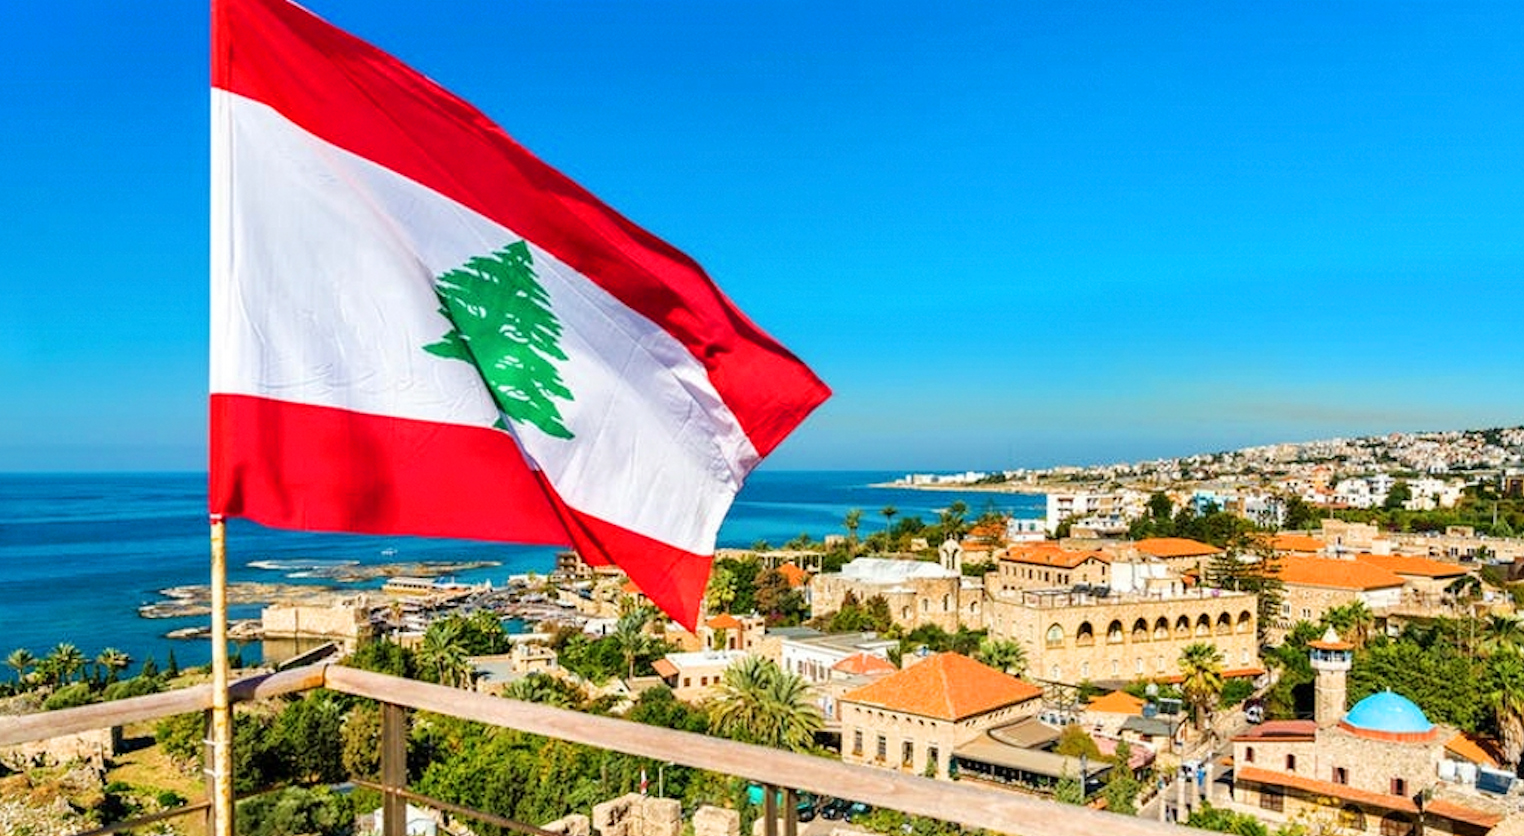 مجموعة السلام العربي تناشد قادة لبنان وأد الفتنة في مهدها